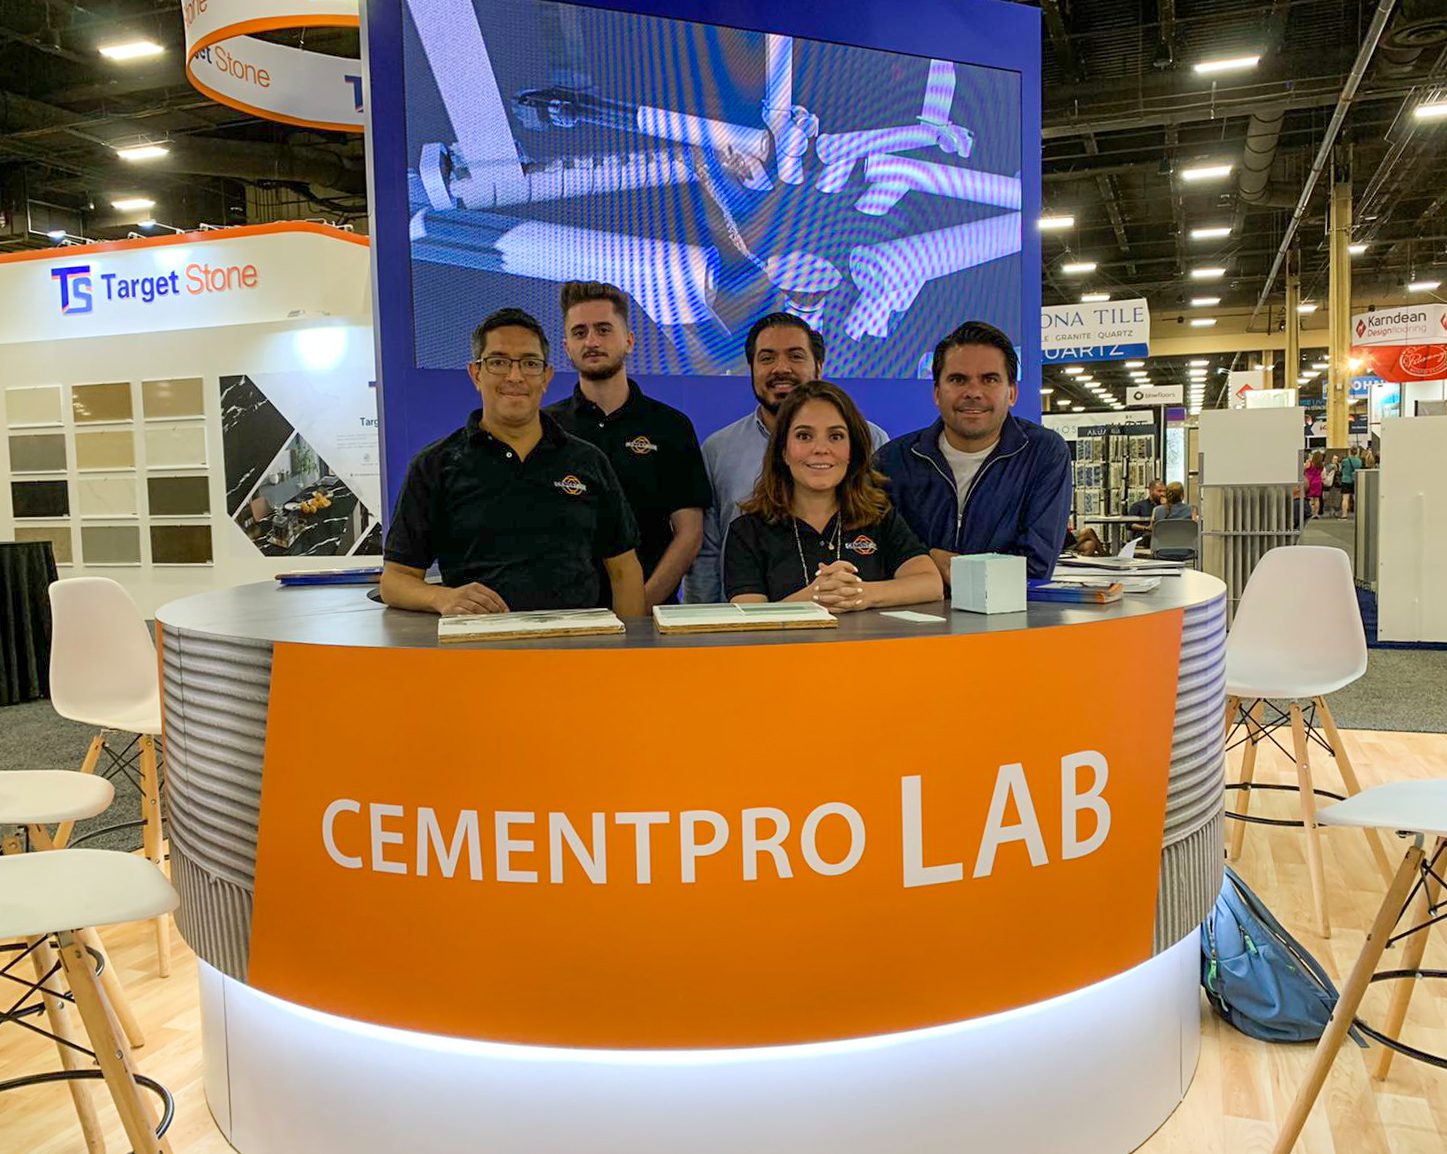 CementPro Lab in Las Vegas